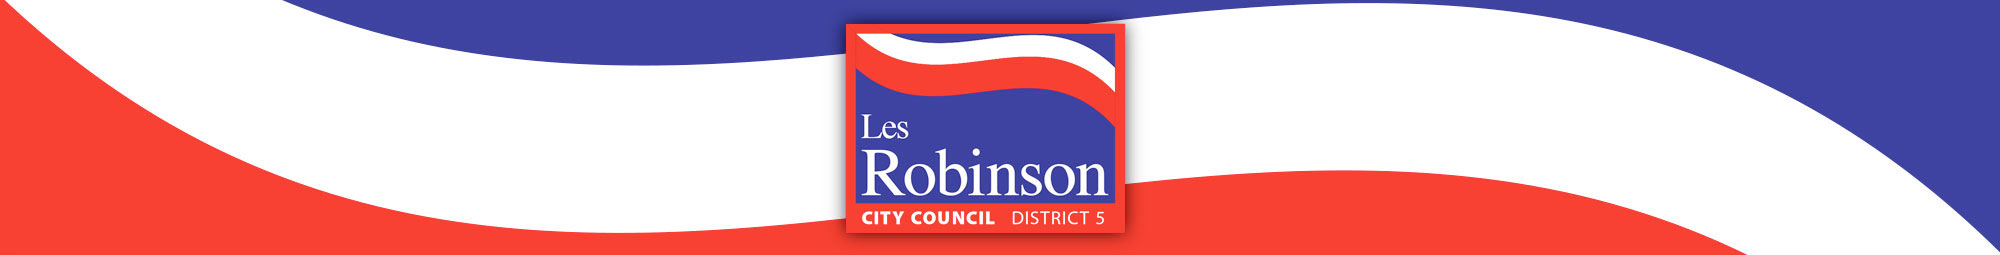 Les Robinson in a suit, City Council District 5.